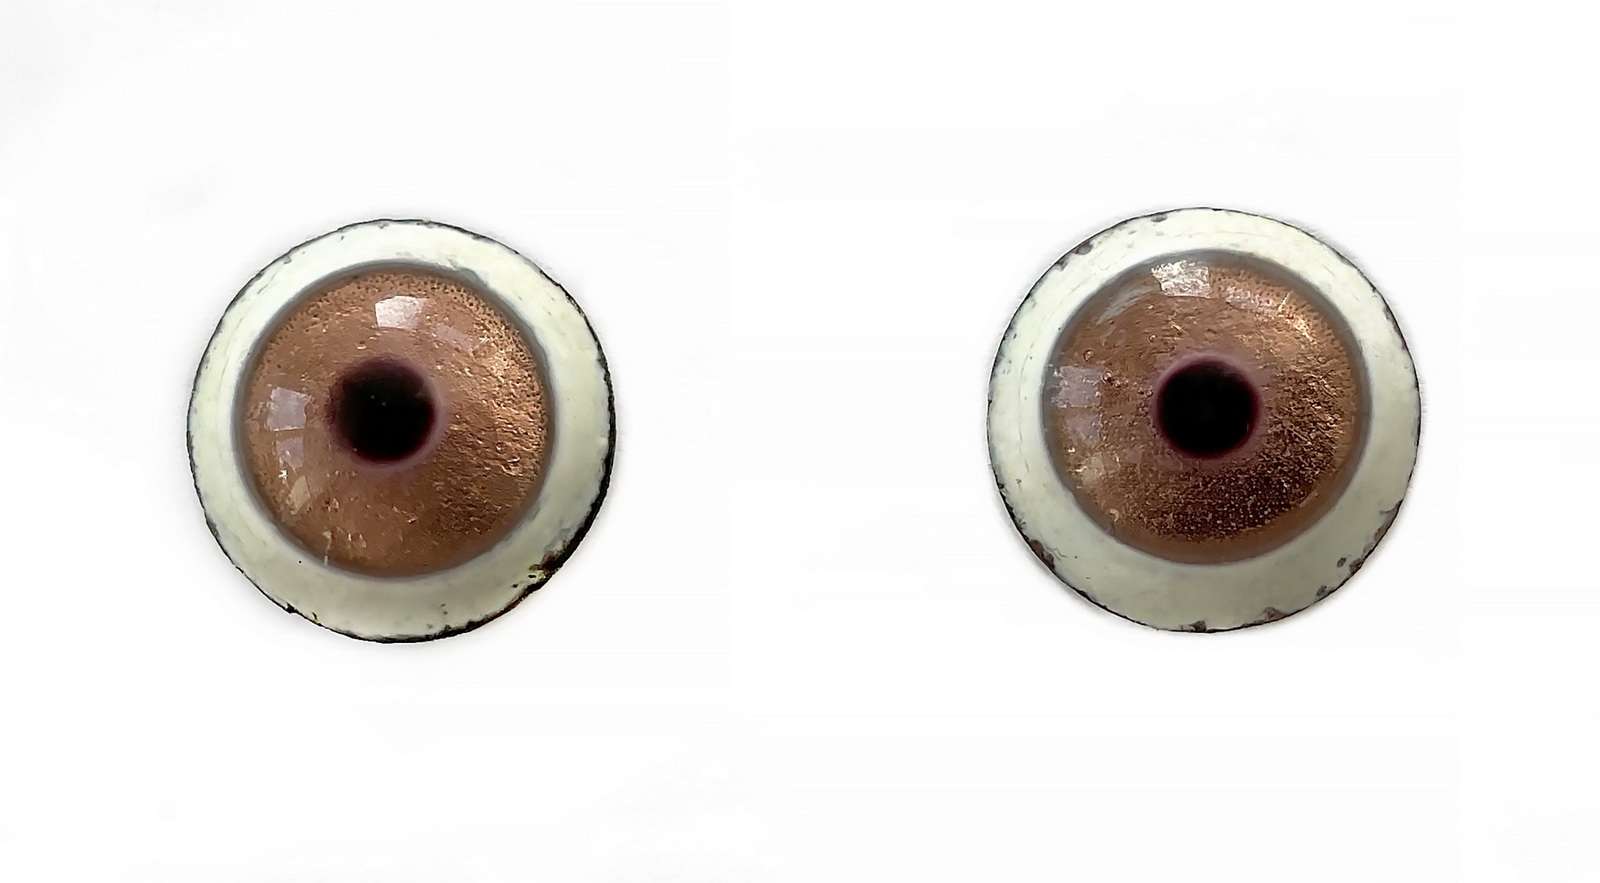 Глаза-пуговки эмалевые. 13 мм. 470 руб.